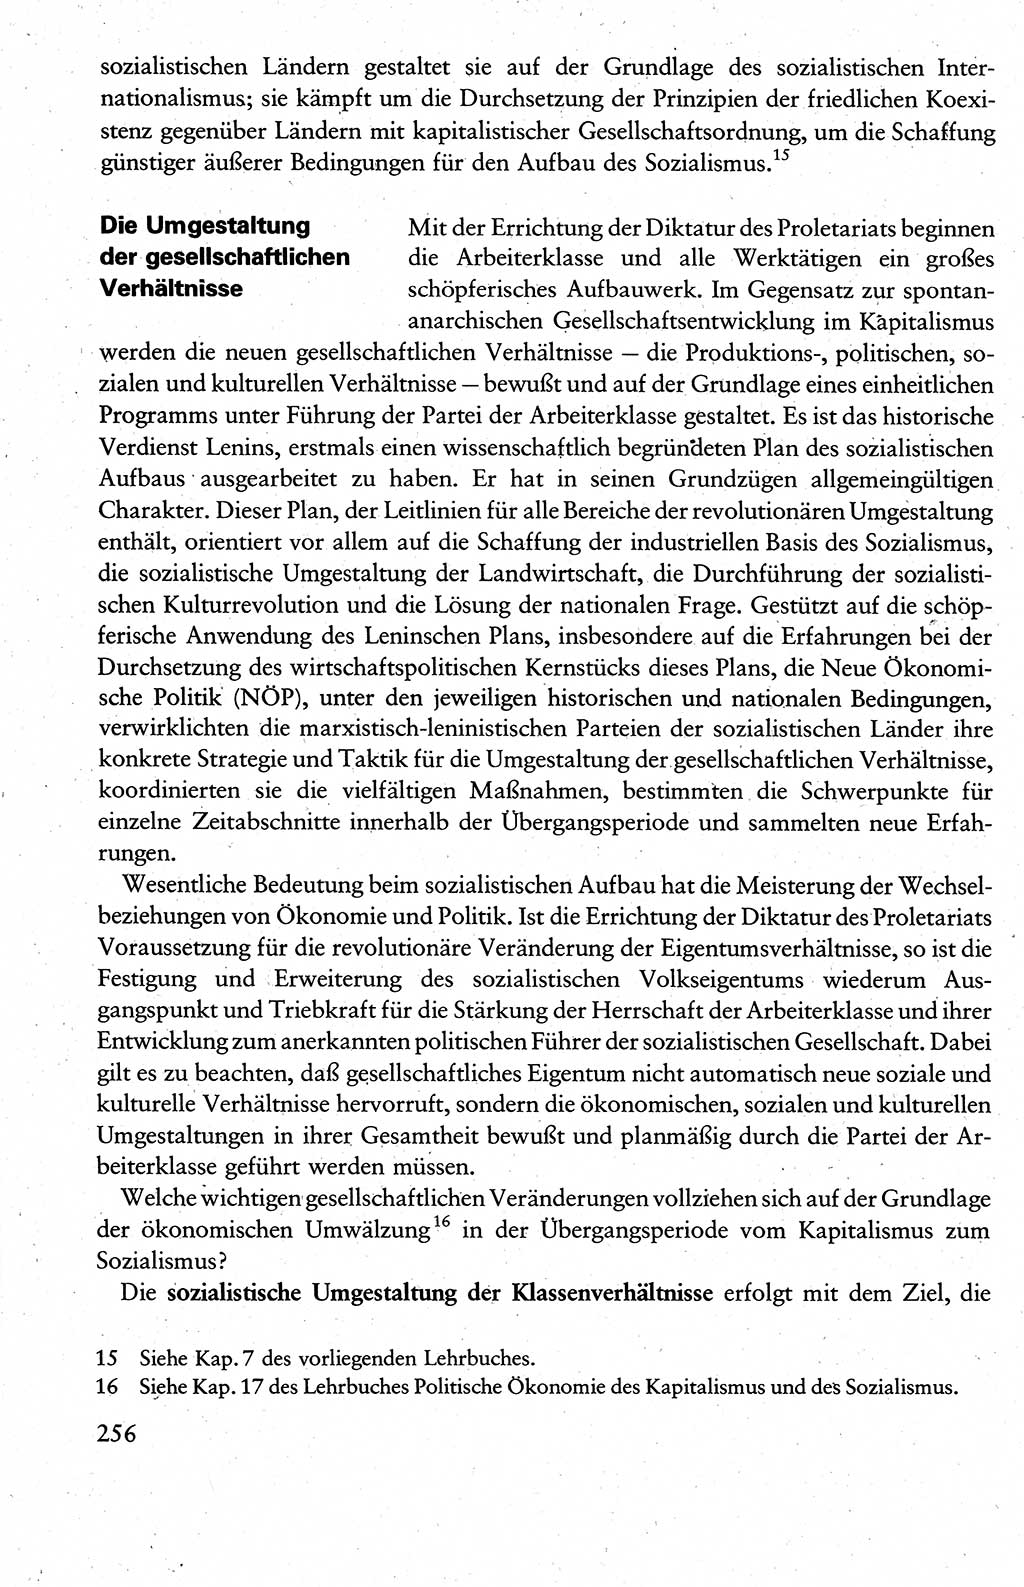 Wissenschaftlicher Kommunismus [Deutsche Demokratische Republik (DDR)], Lehrbuch für das marxistisch-leninistische Grundlagenstudium 1983, Seite 256 (Wiss. Komm. DDR Lb. 1983, S. 256)